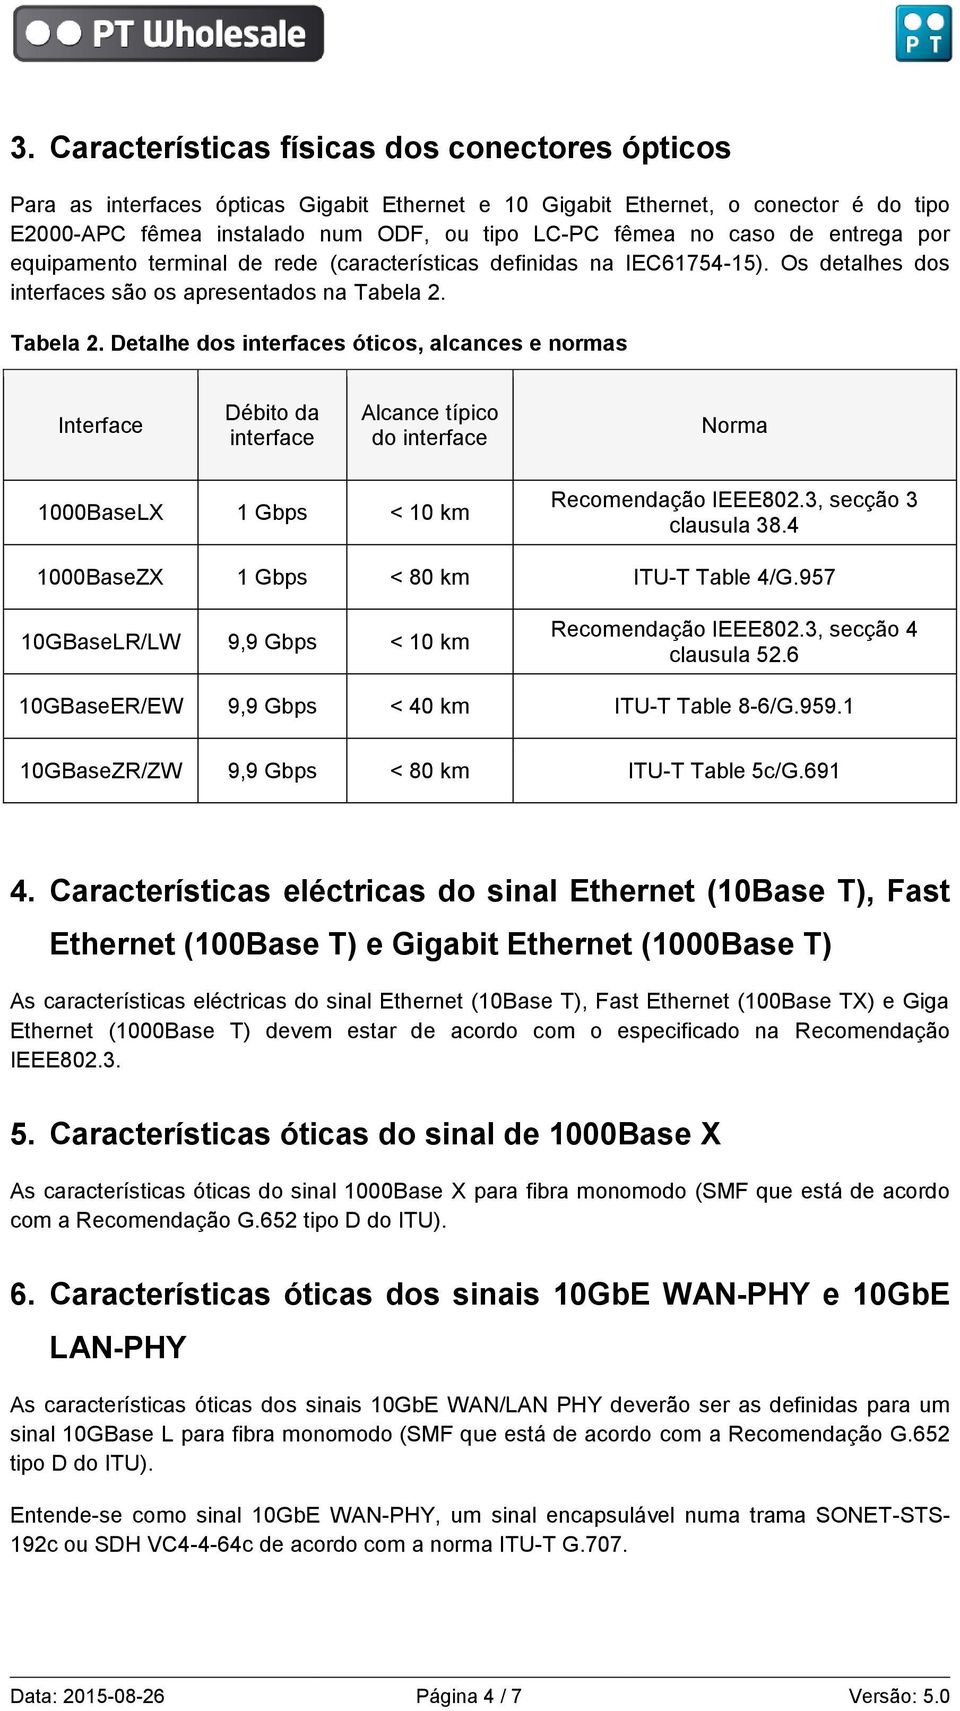 Tabela 2. Detalhe dos interfaces óticos, alcances e normas Interface Débito da interface Alcance típico do interface Norma 1000BaseLX 1 Gbps < 10 km Recomendação IEEE802.3, secção 3 clausula 38.